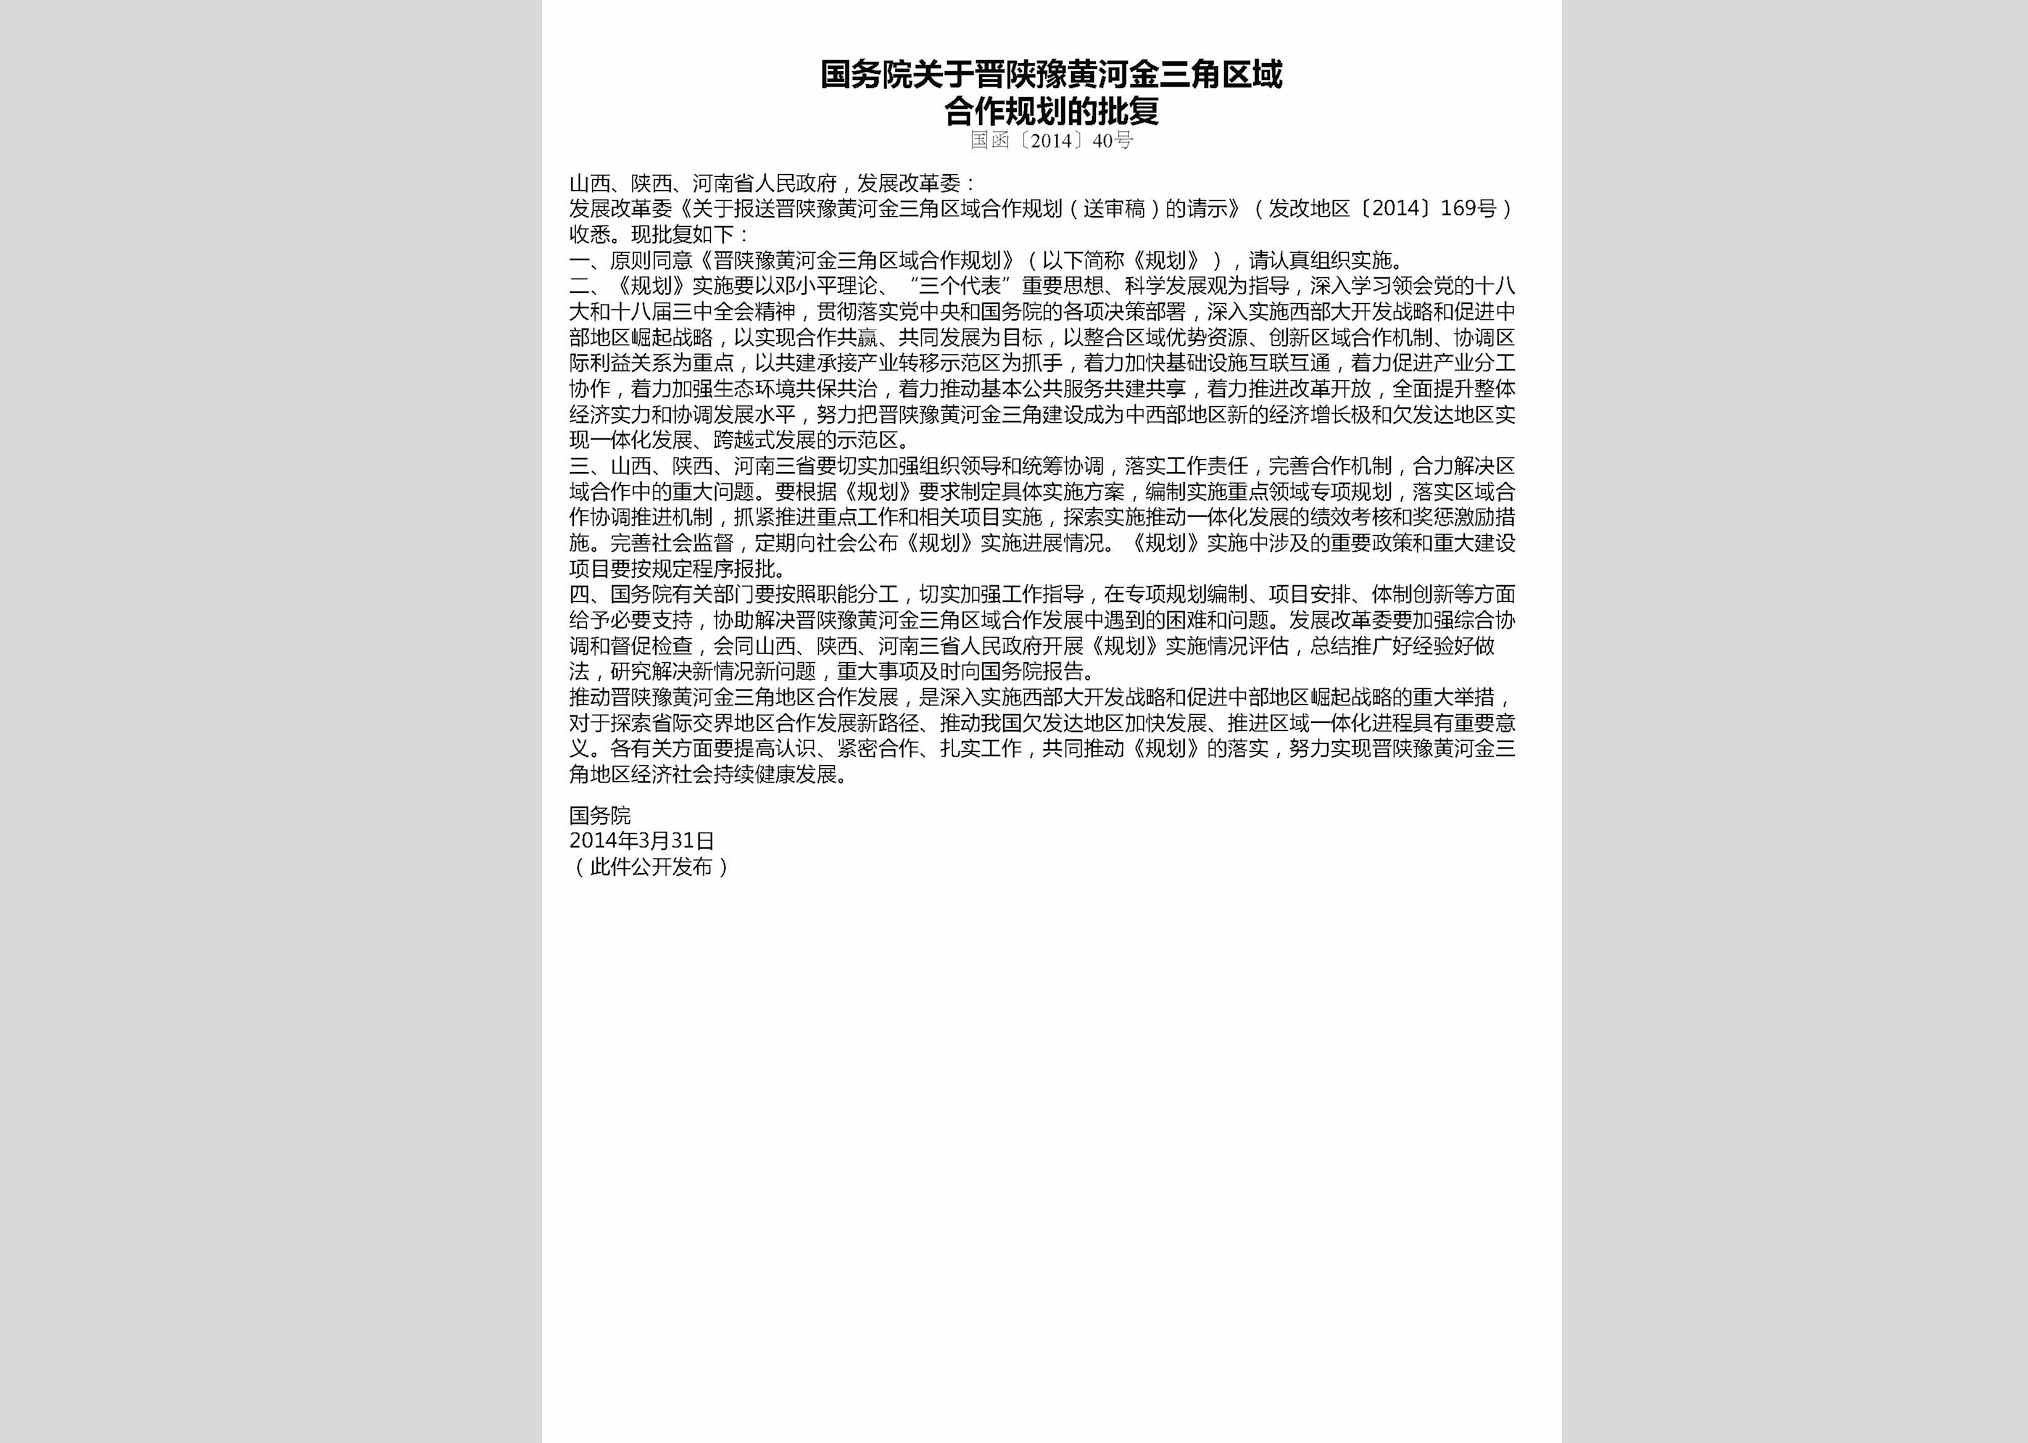 国函[2014]40号：国务院关于晋陕豫黄河金三角区域合作规划的批复